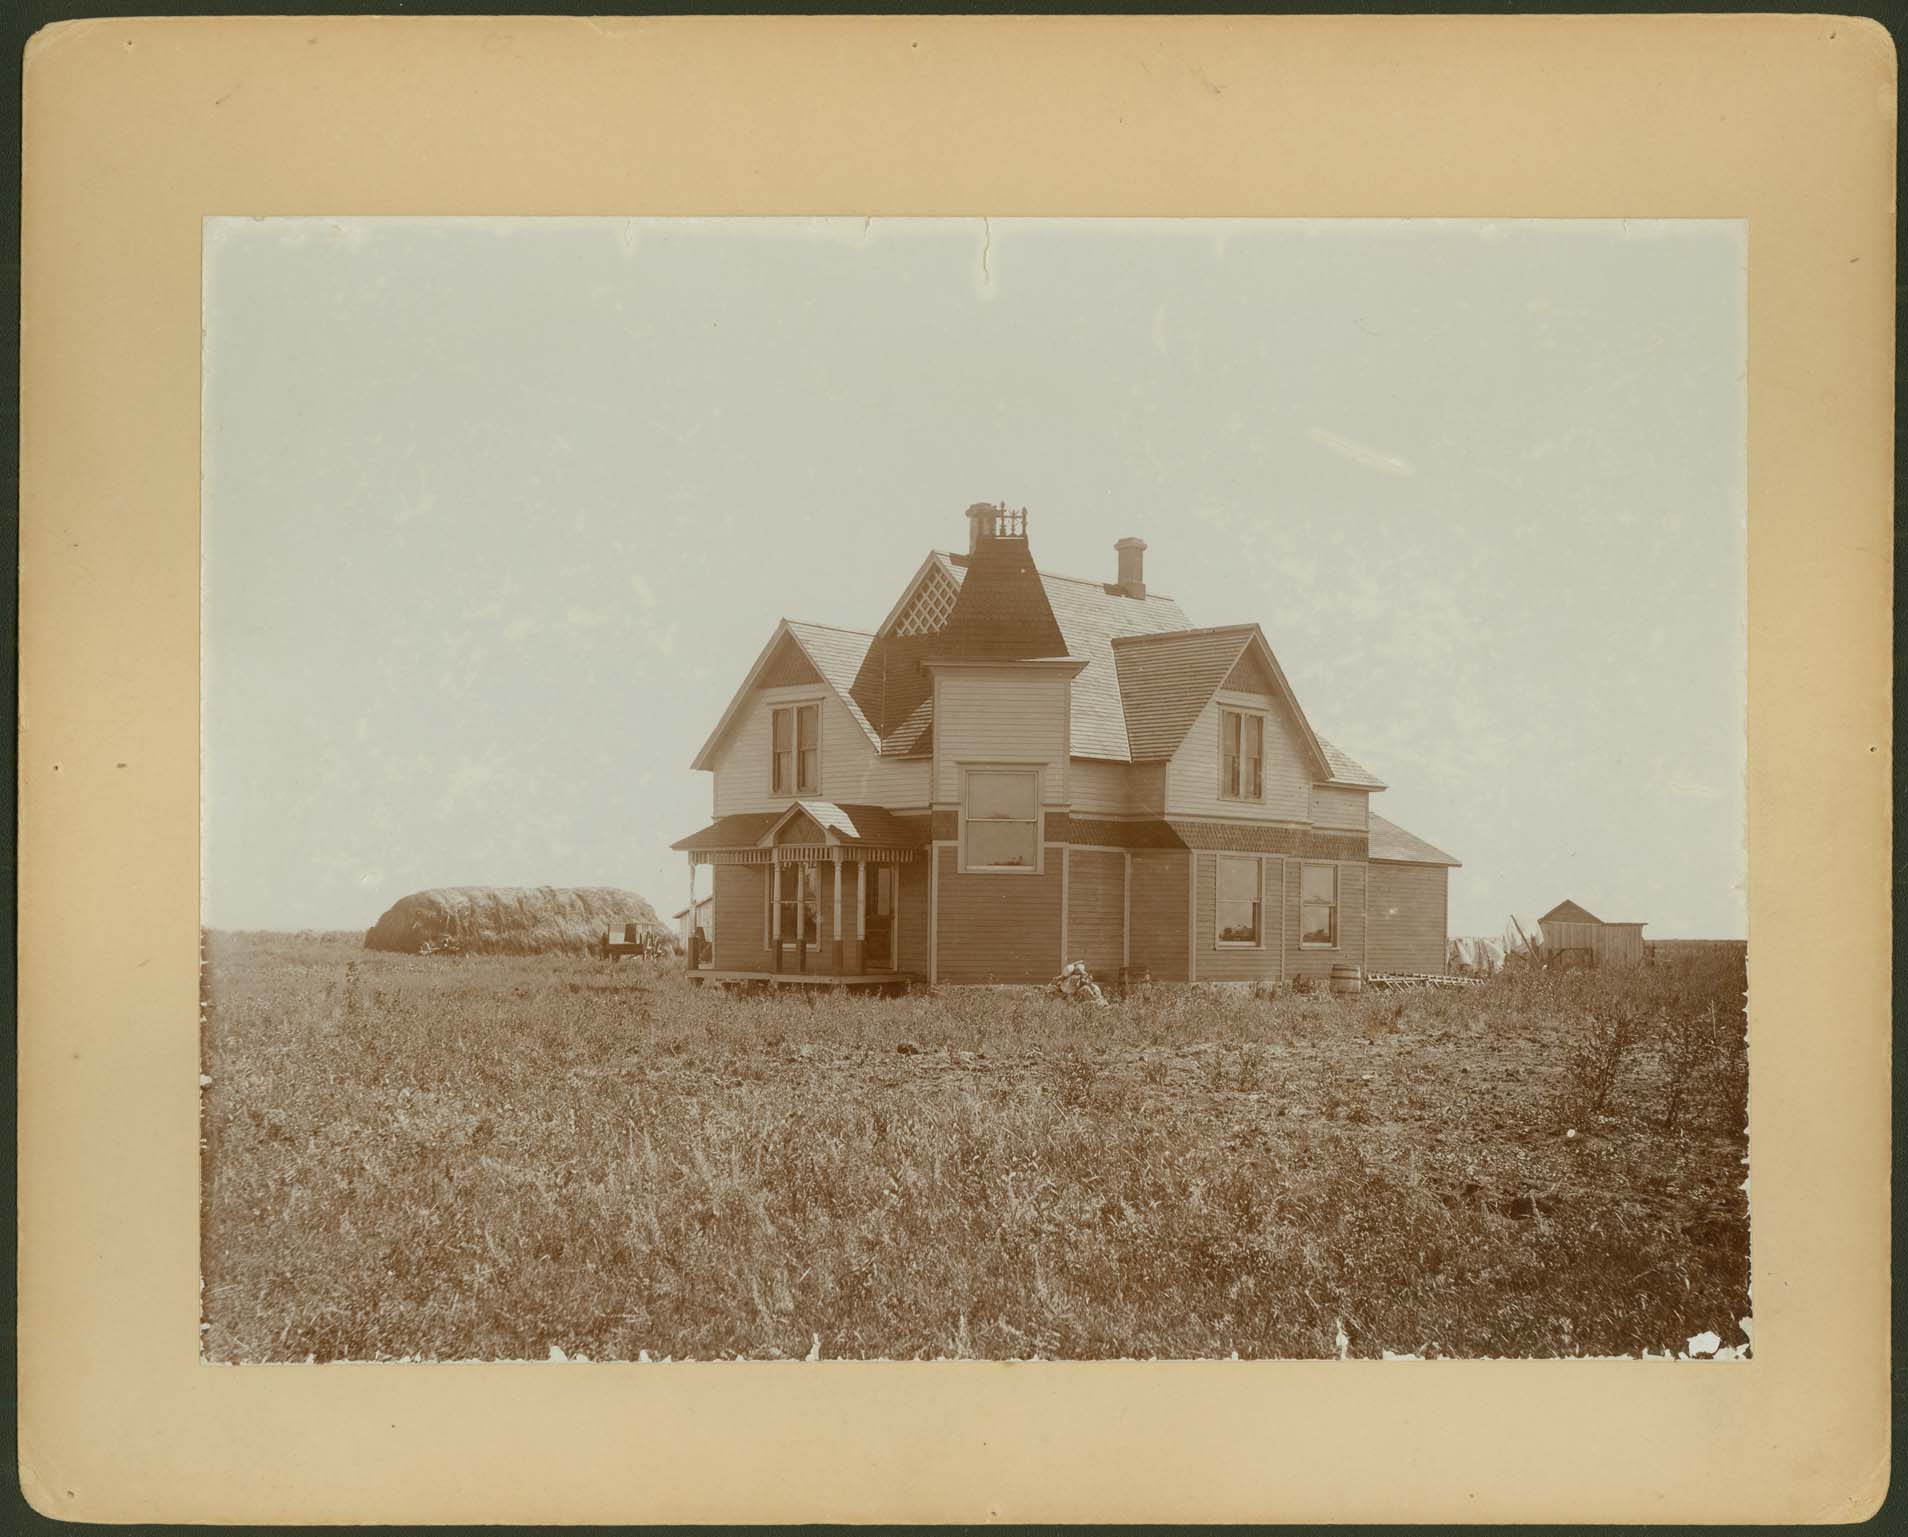 House on the prairie